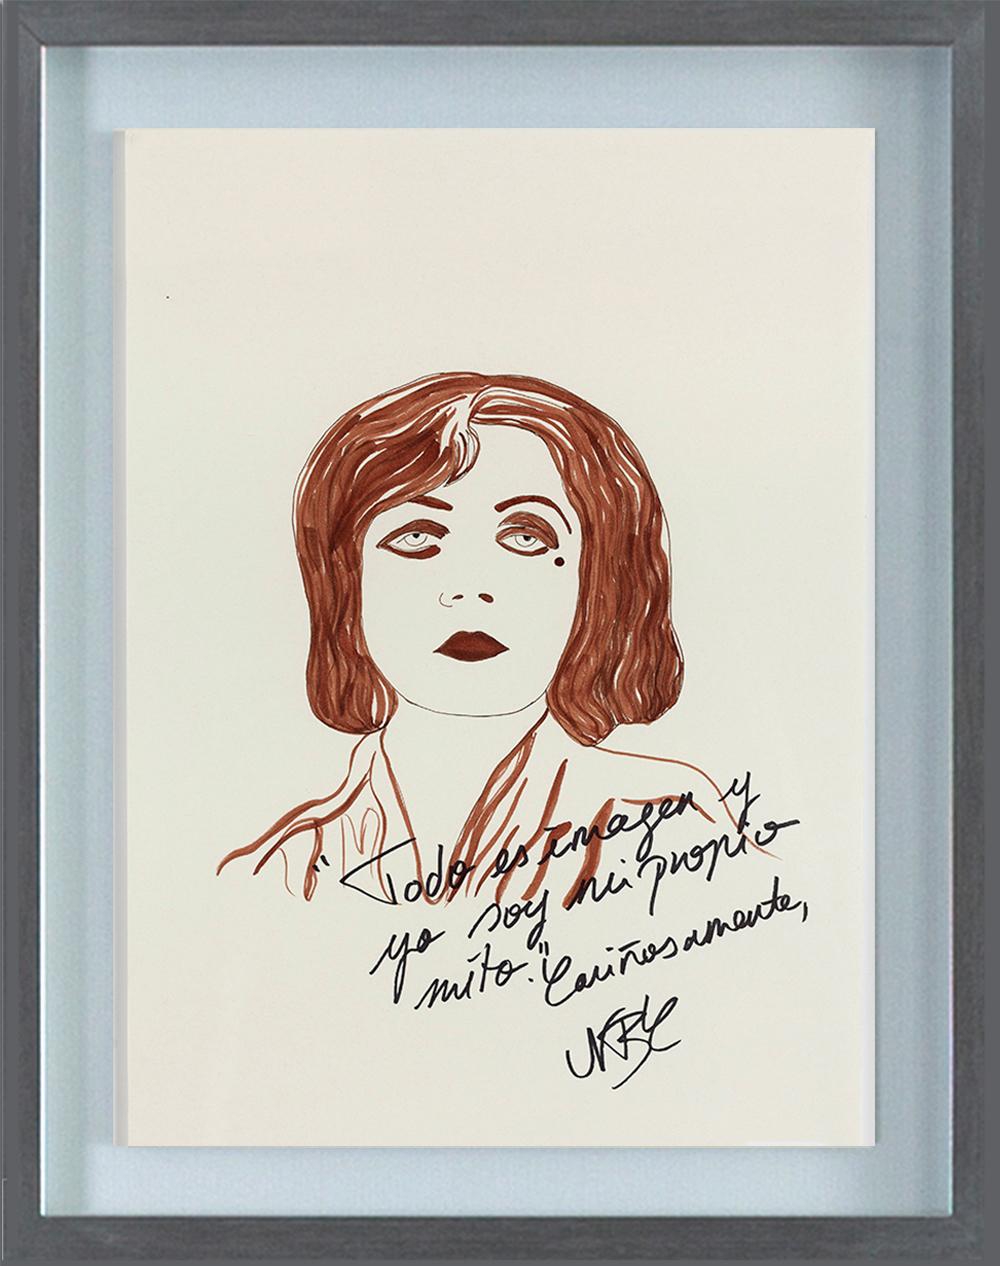 Granduah Bankhead 3 et Pola Negri II Diptyque. De la série Dis-enchanted. - Contemporain Art par Paloma Castello